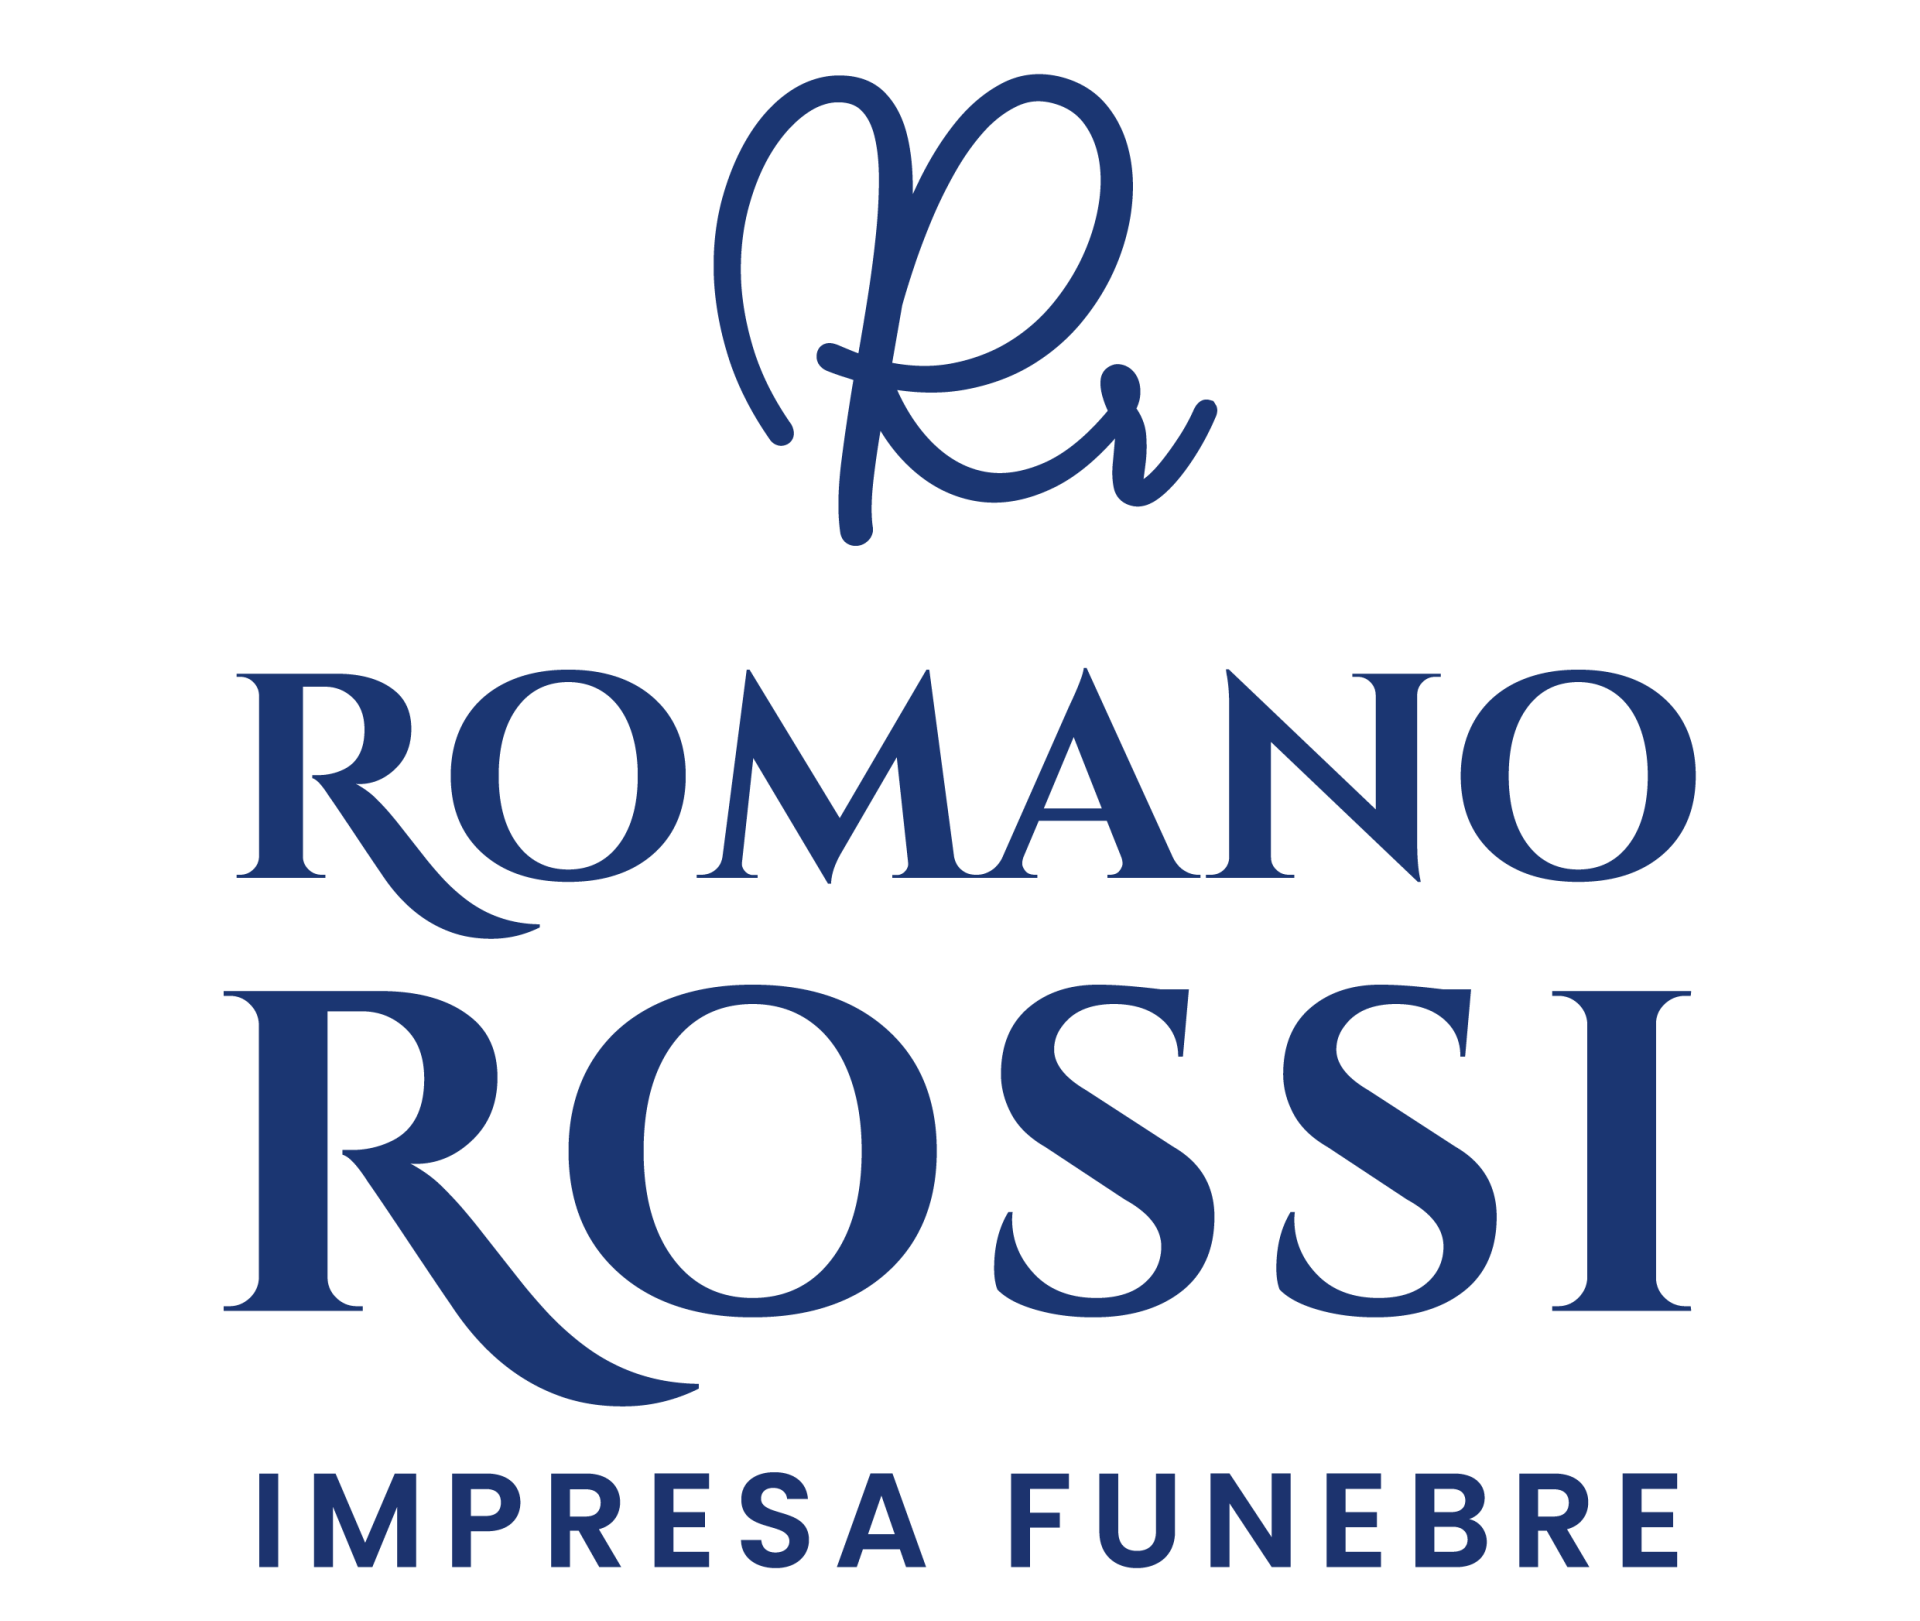 ROMANO ROSSI IMPRESA FUNEBRE UNIPERSONALE LOGO